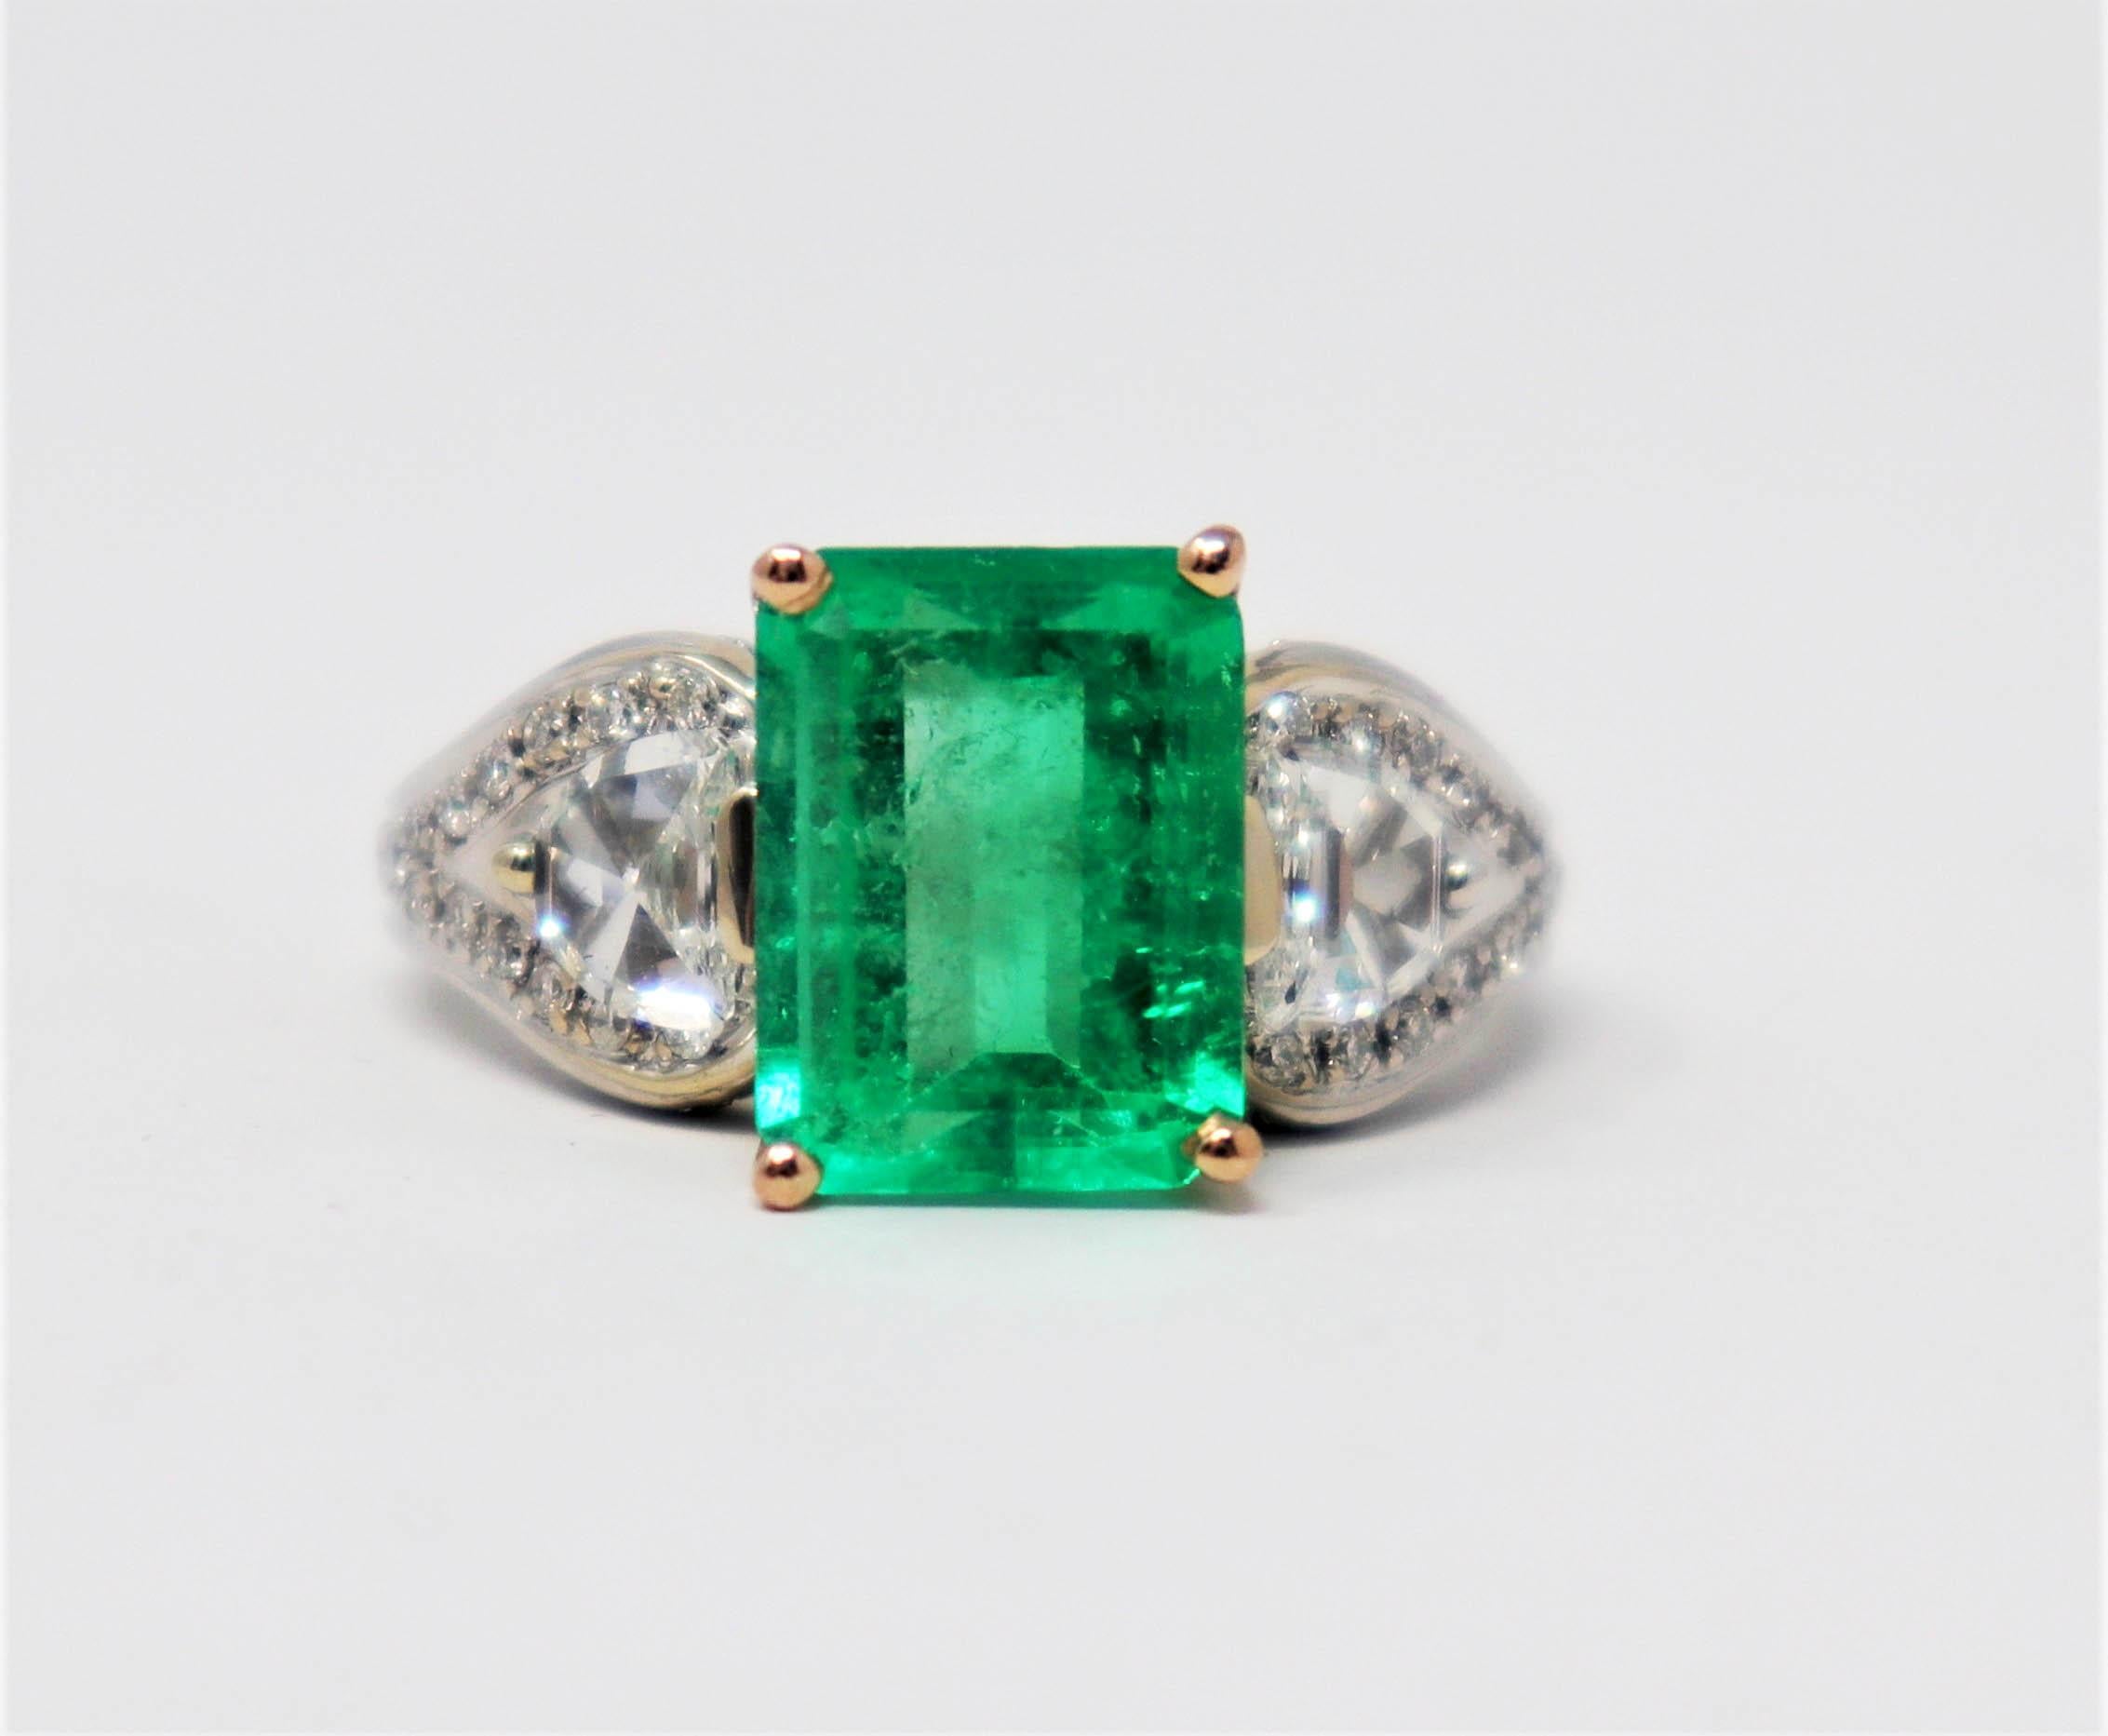 Taille de l'anneau : 6.75

Spectaculaire bague à trois pierres en émeraude naturelle et diamant conçue par Henri Daussi. La brillante pierre émeraude vert vif se détache magnifiquement sur les diamants blancs éclatants et attire vraiment l'attention